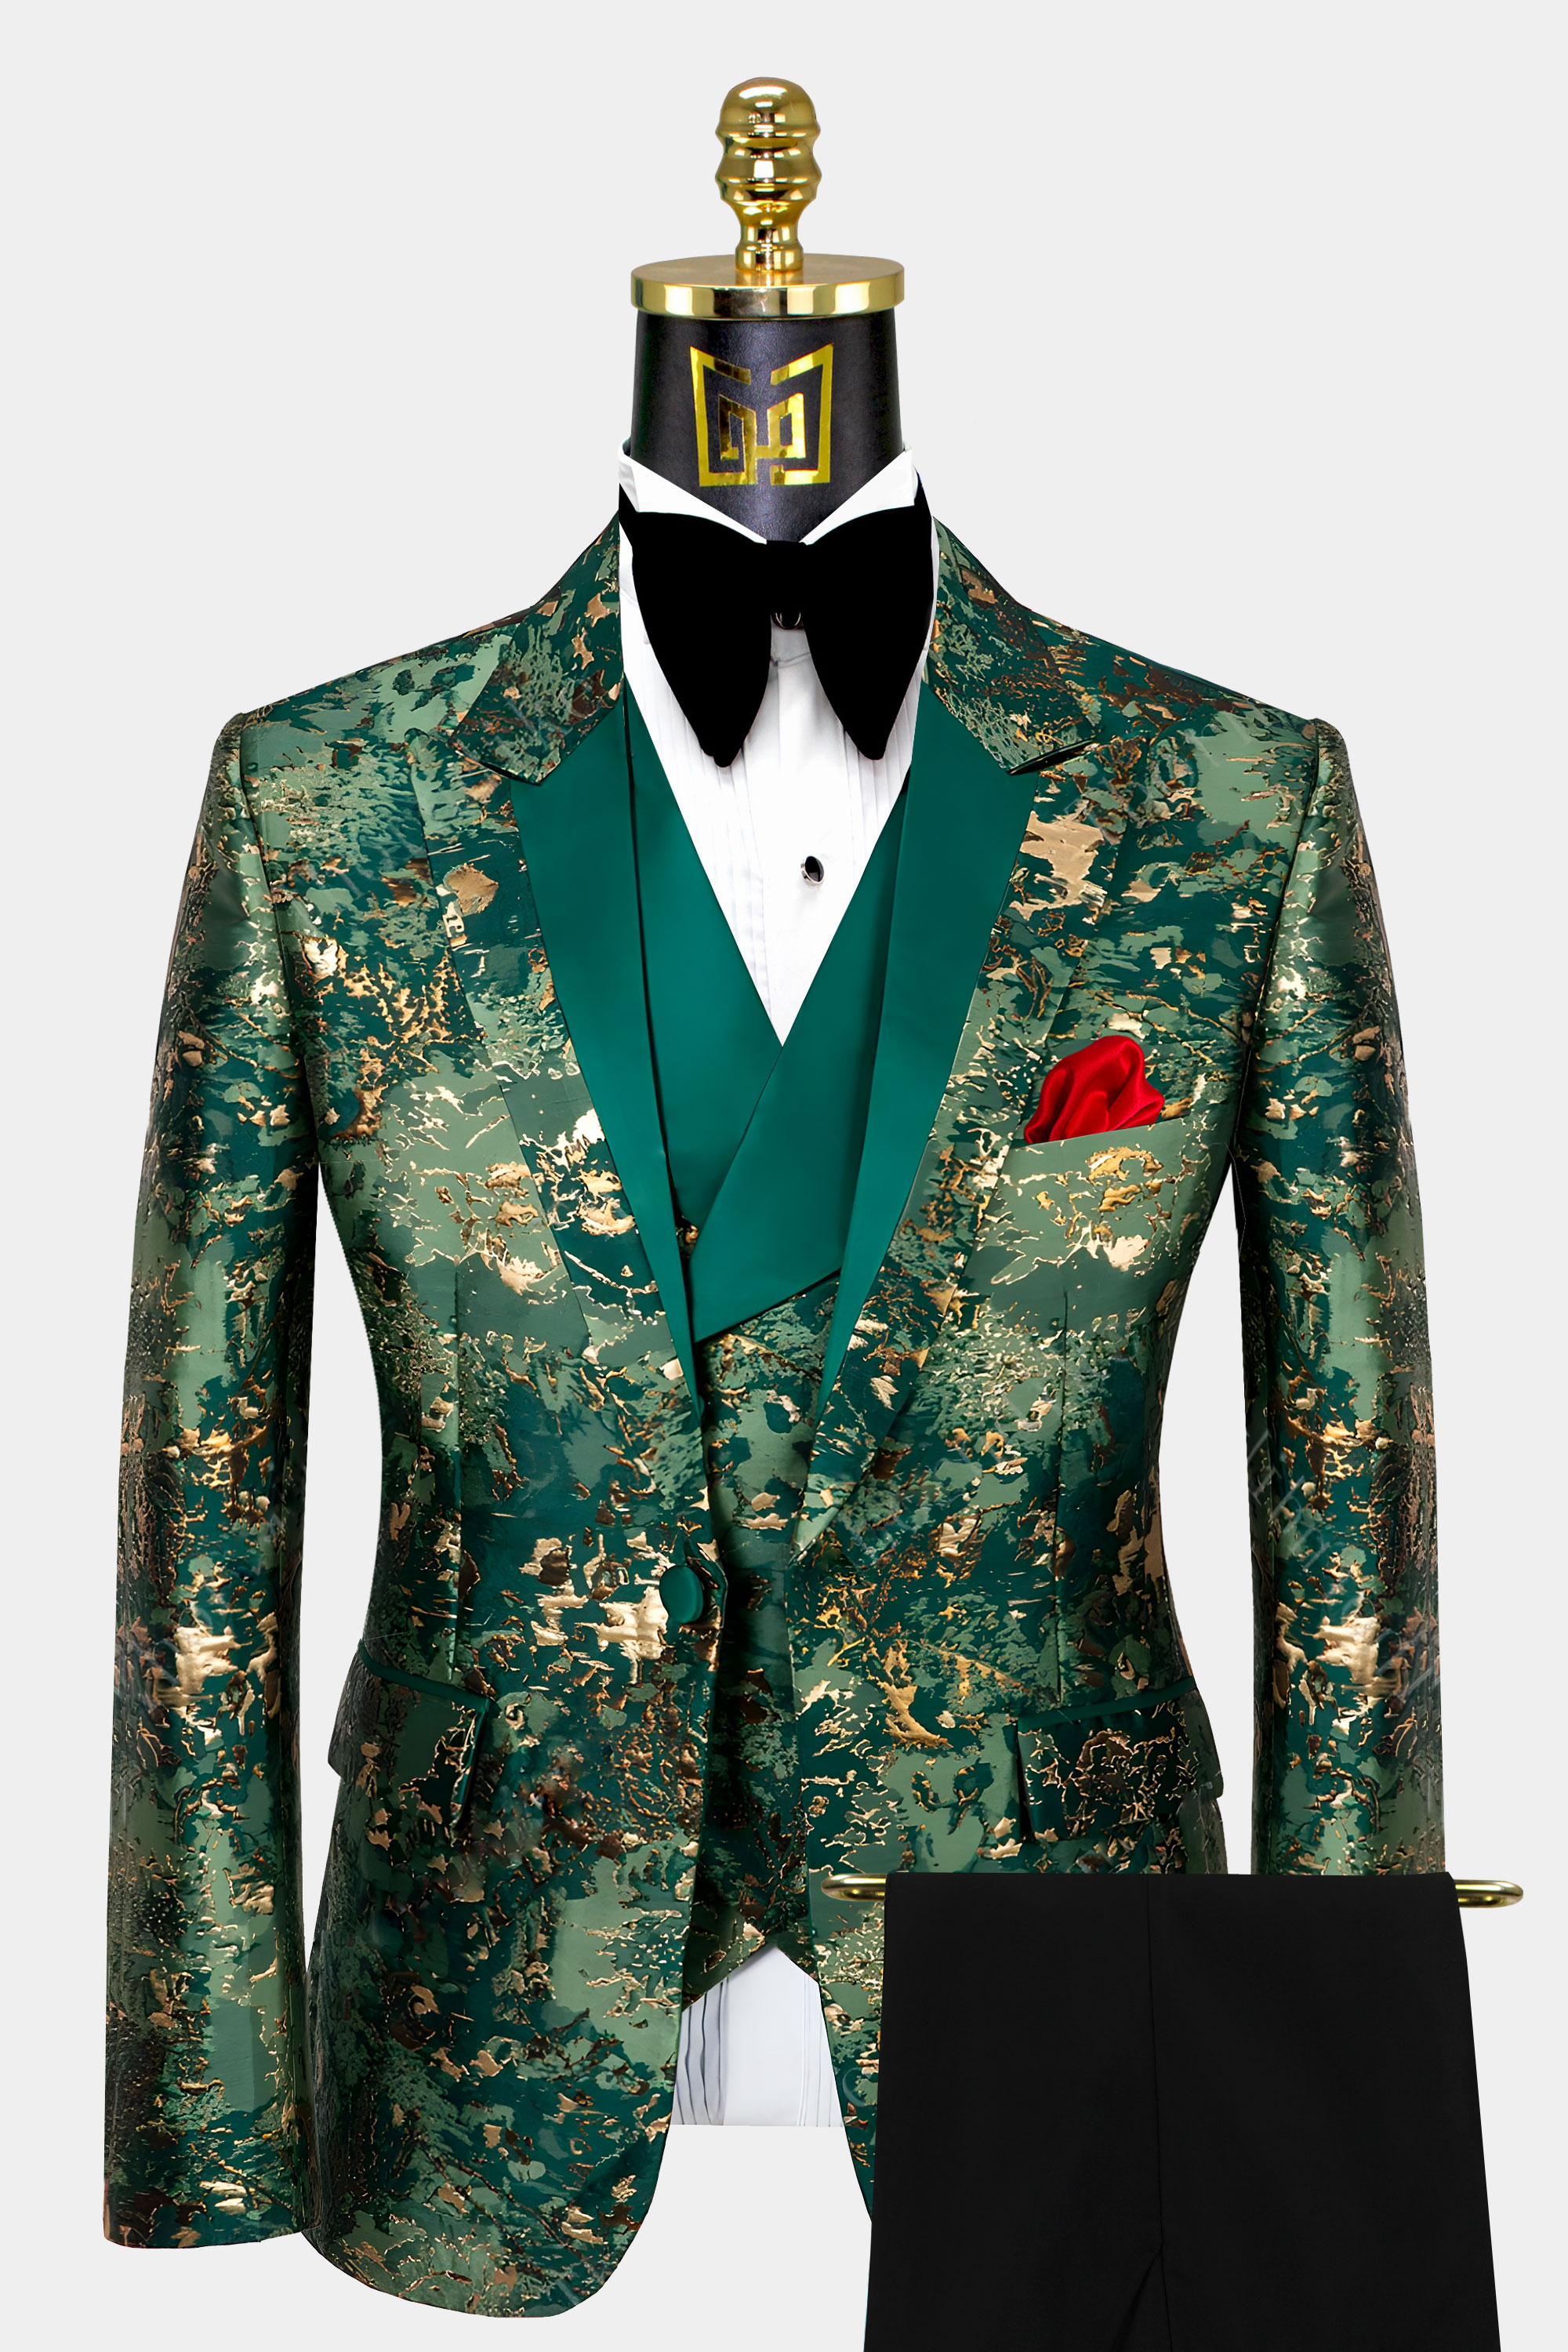 Green & Gold Camo Tuxedo - 3 Piece